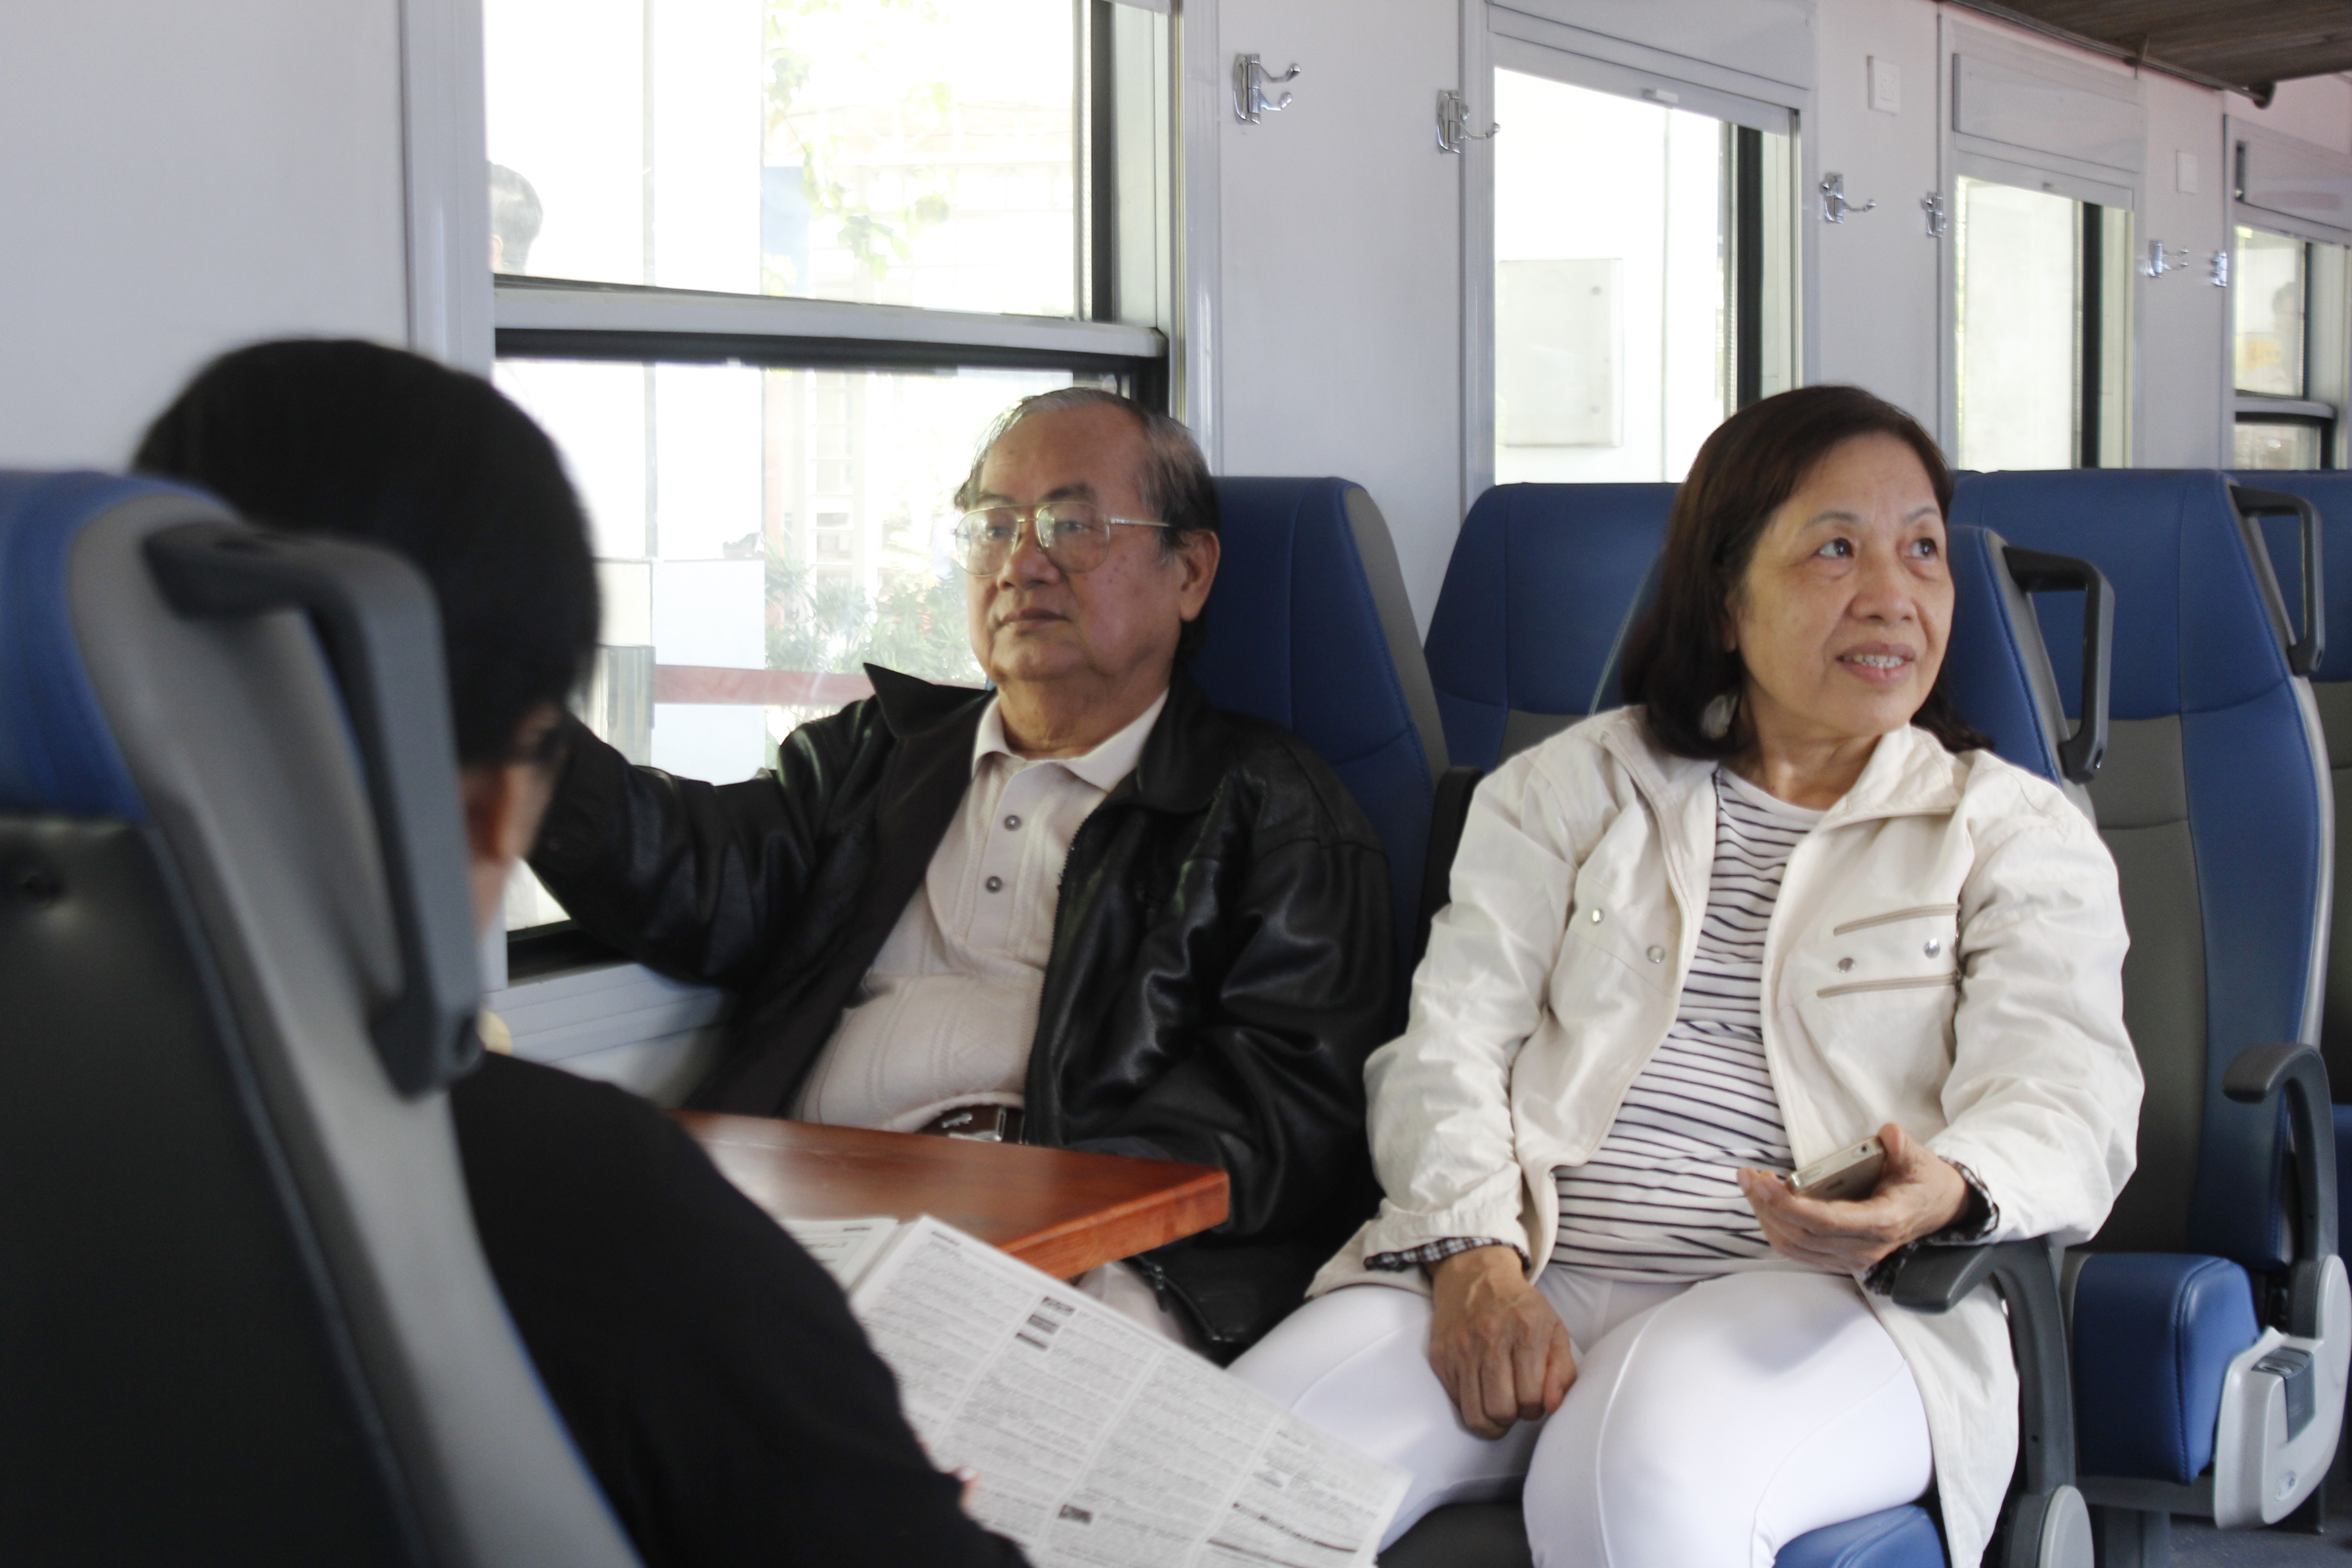 Hành khách di chuyển trên chuyến tàu ngoại ô - Ảnh: Phạm Hữu